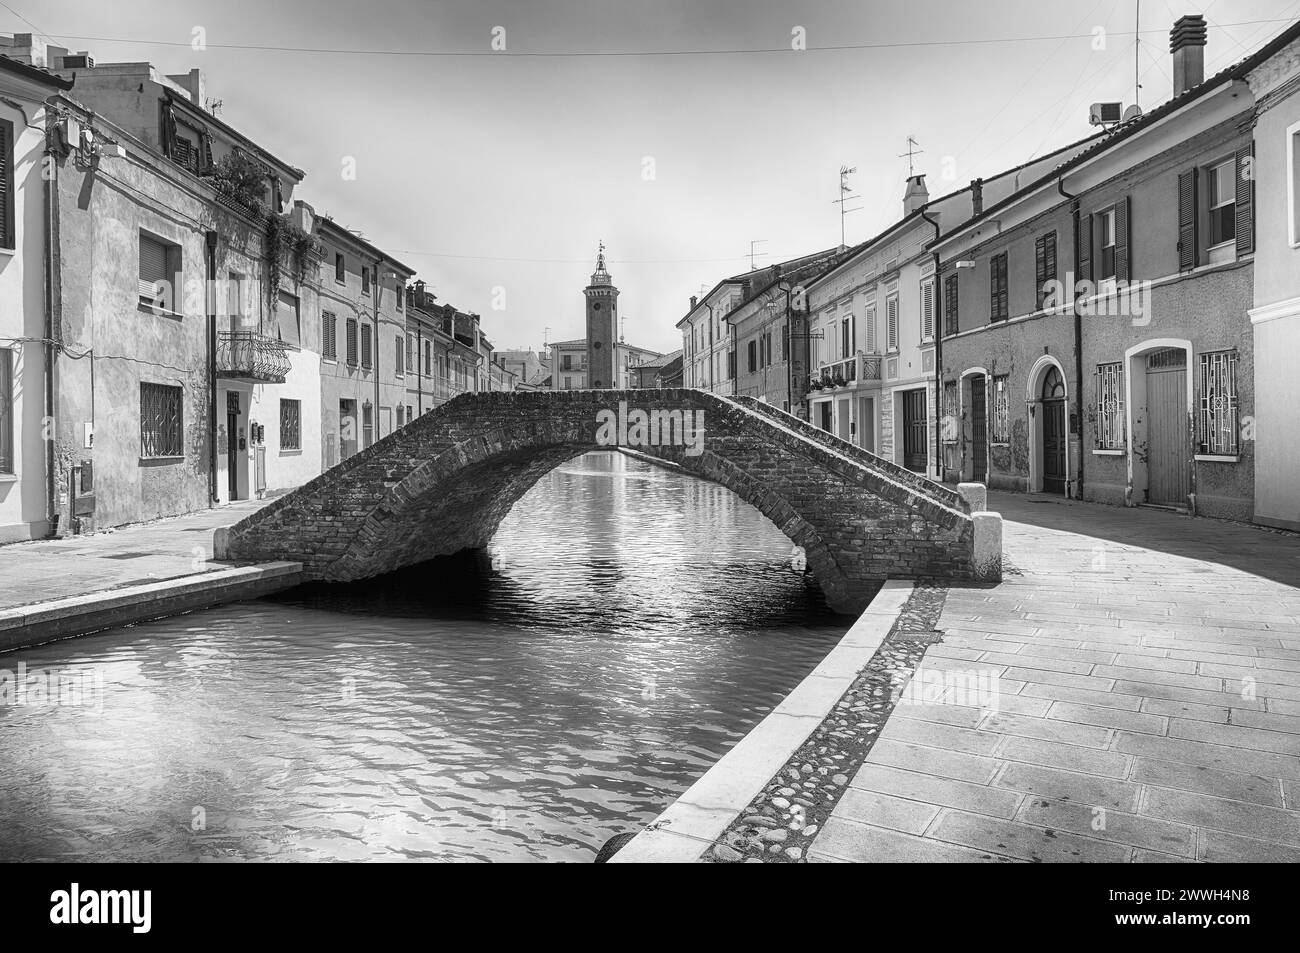 Marcher dans le centre de Comacchio, ville pittoresque avec des canaux et des ponts dans la province de Ferrare, Italie Banque D'Images